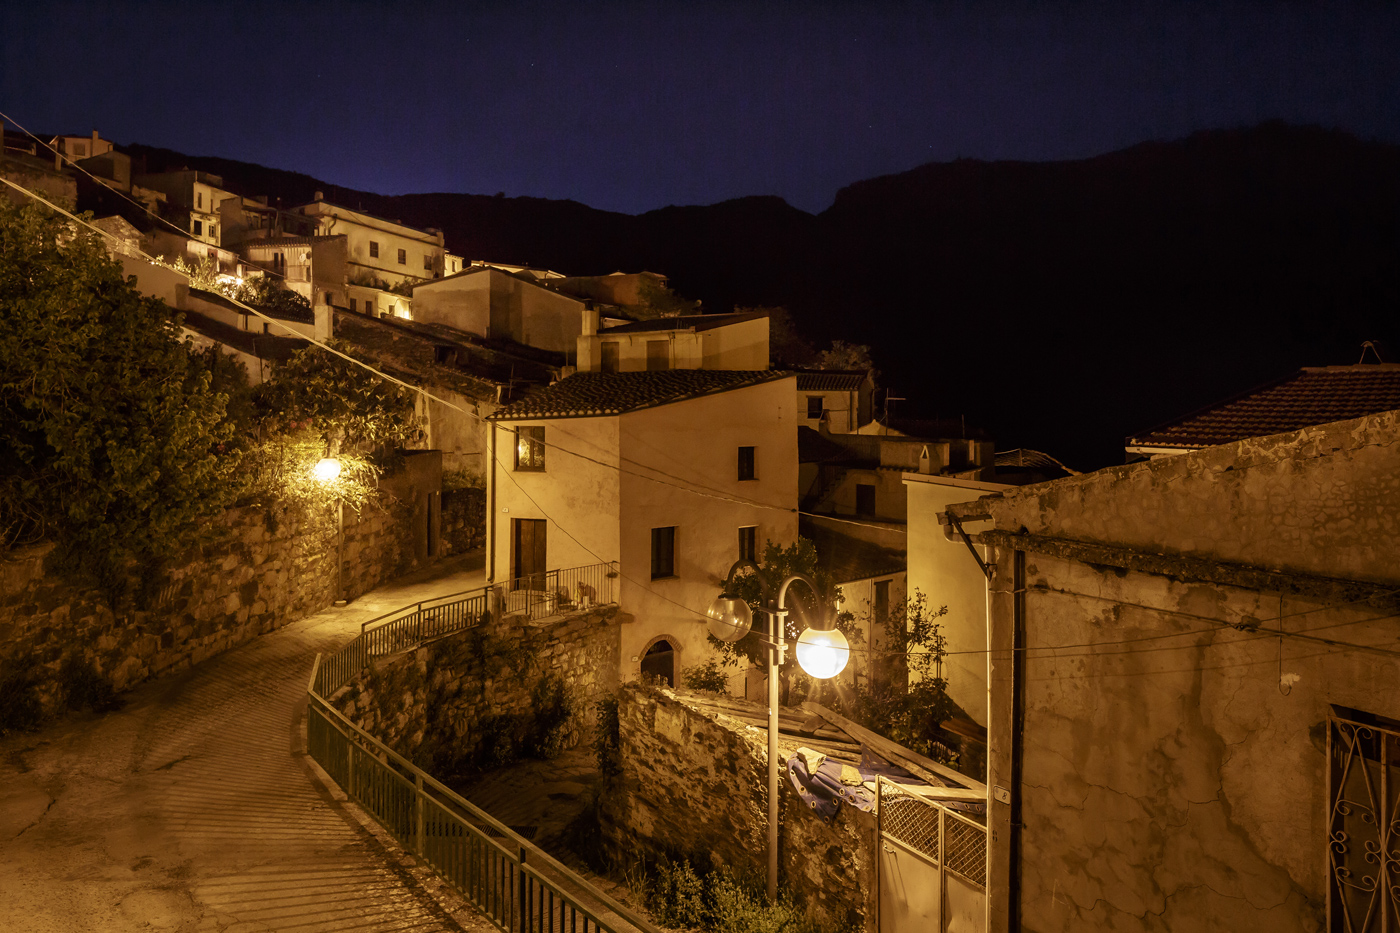 B&B Gennarcu. Scorci di Ussassai di notte, Sardegna